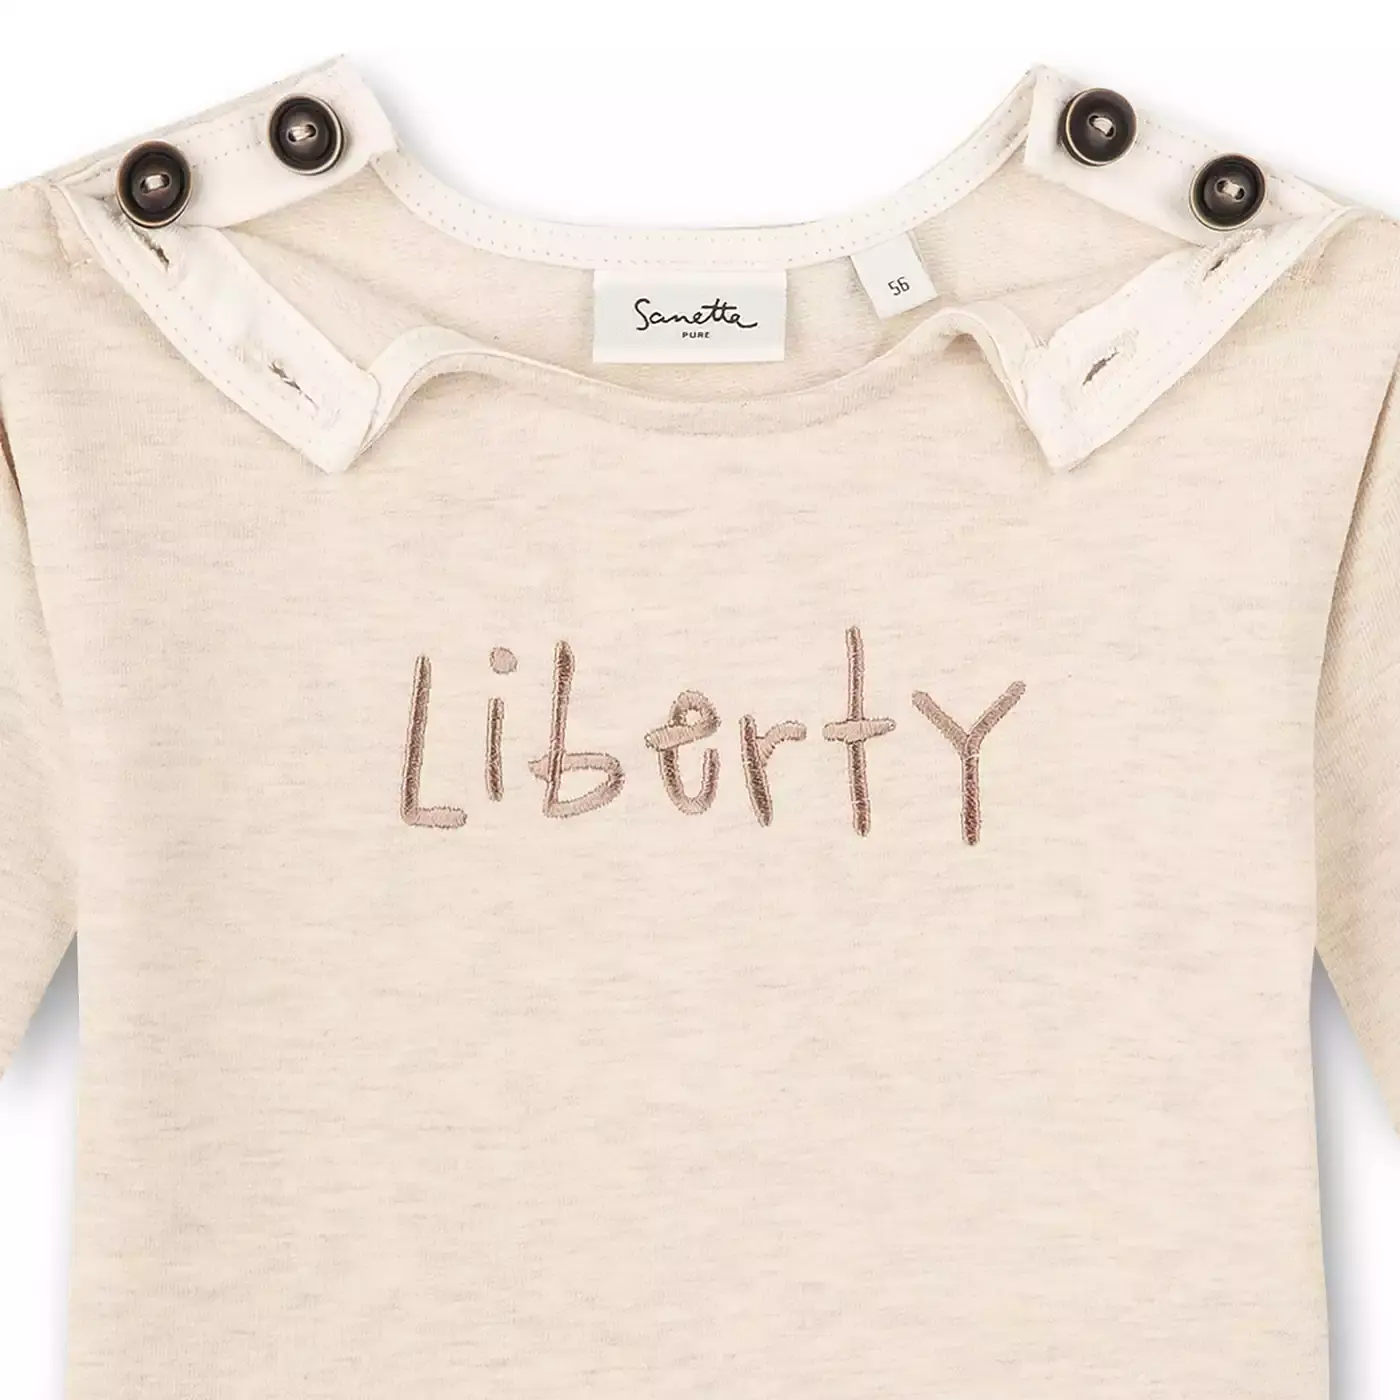 Sweatshirt Liberty Sanetta Beige 2006579865109 4